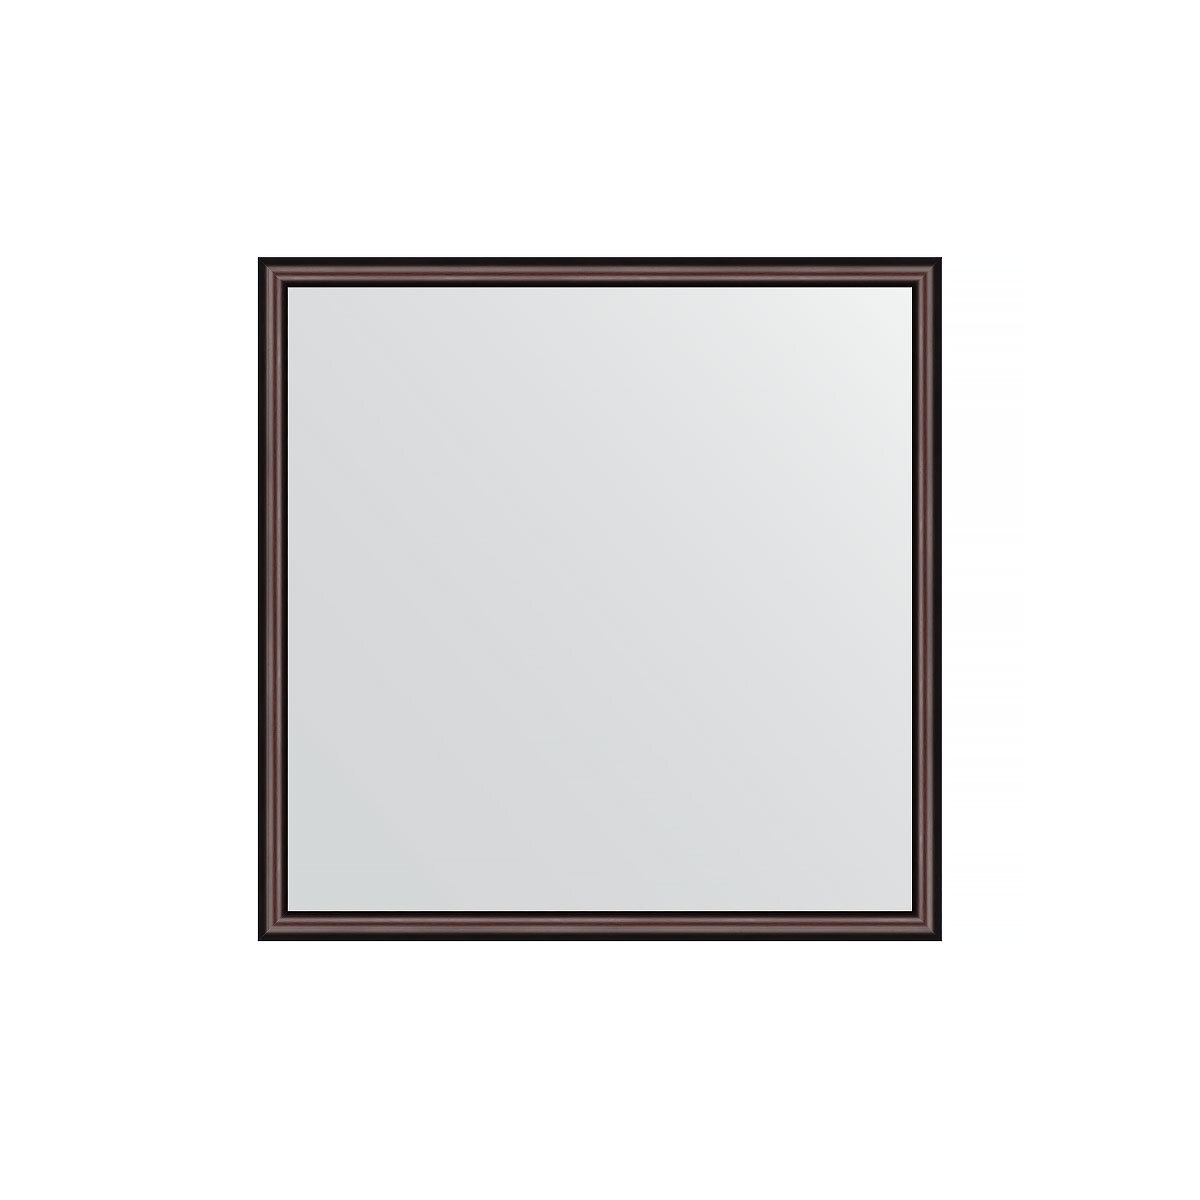 Зеркало настенное EVOFORM в багетной раме махагон, 58х58 см, для гостиной, прихожей, кабинета, спальни и ванной комнаты, BY 0604